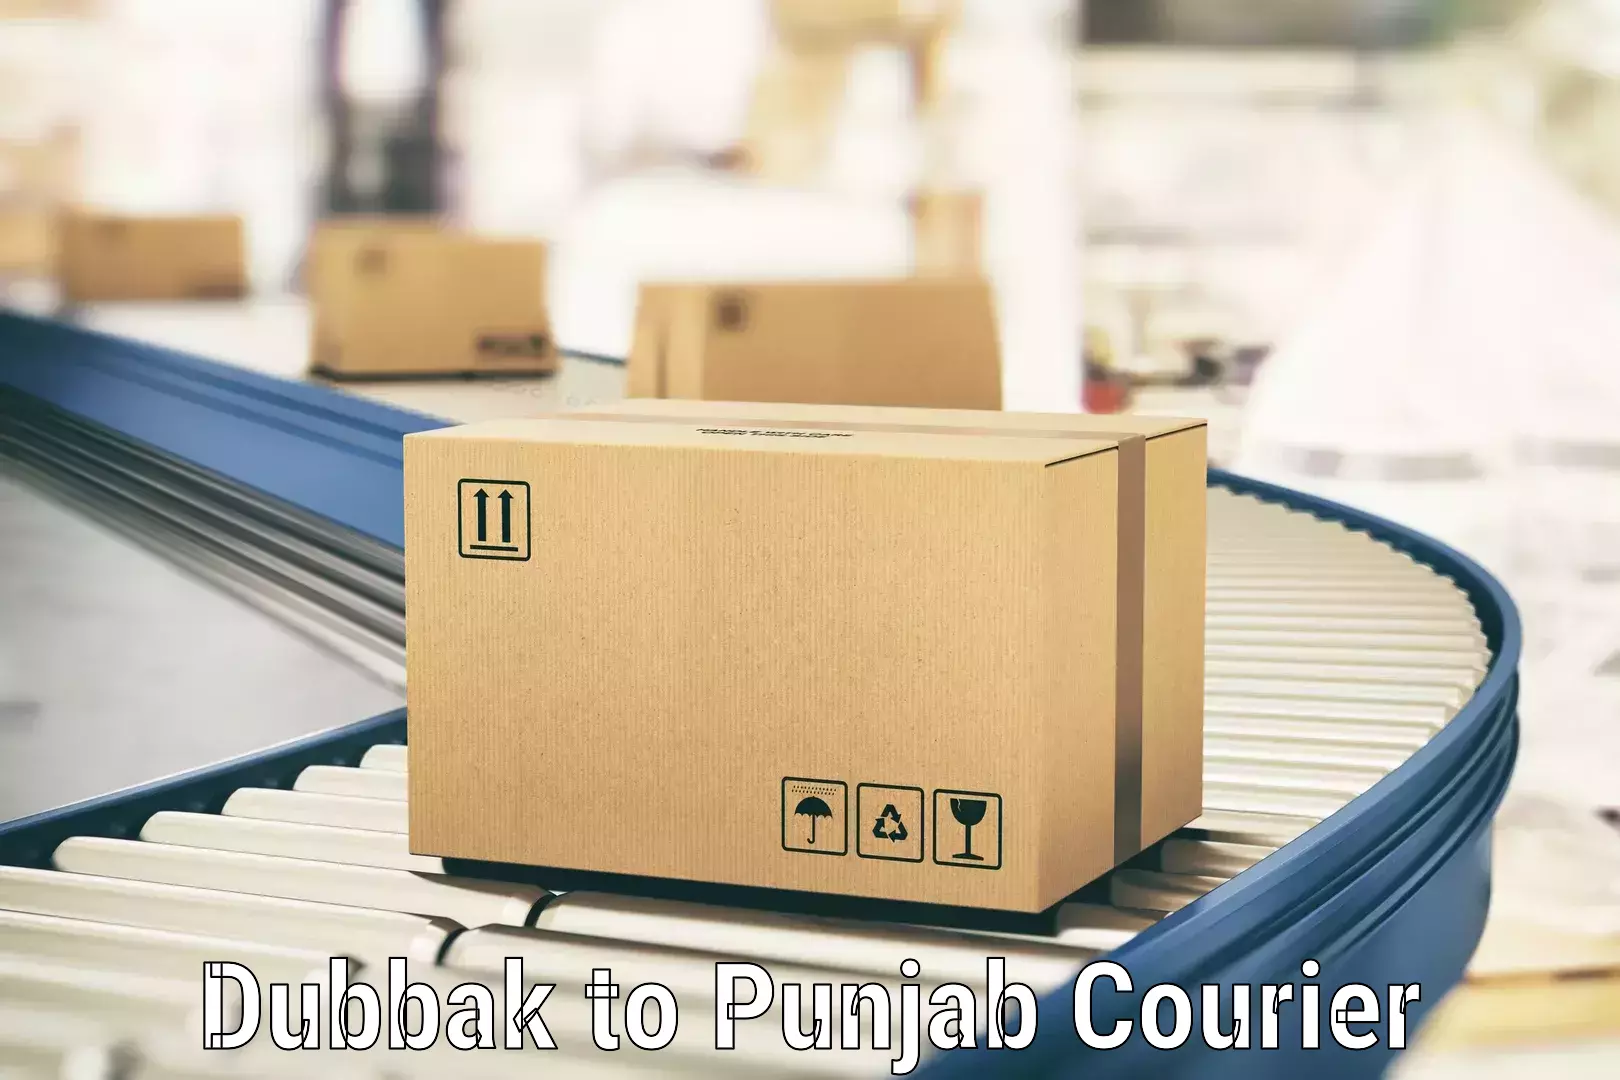 Secure shipping methods Dubbak to Central University of Punjab Bathinda